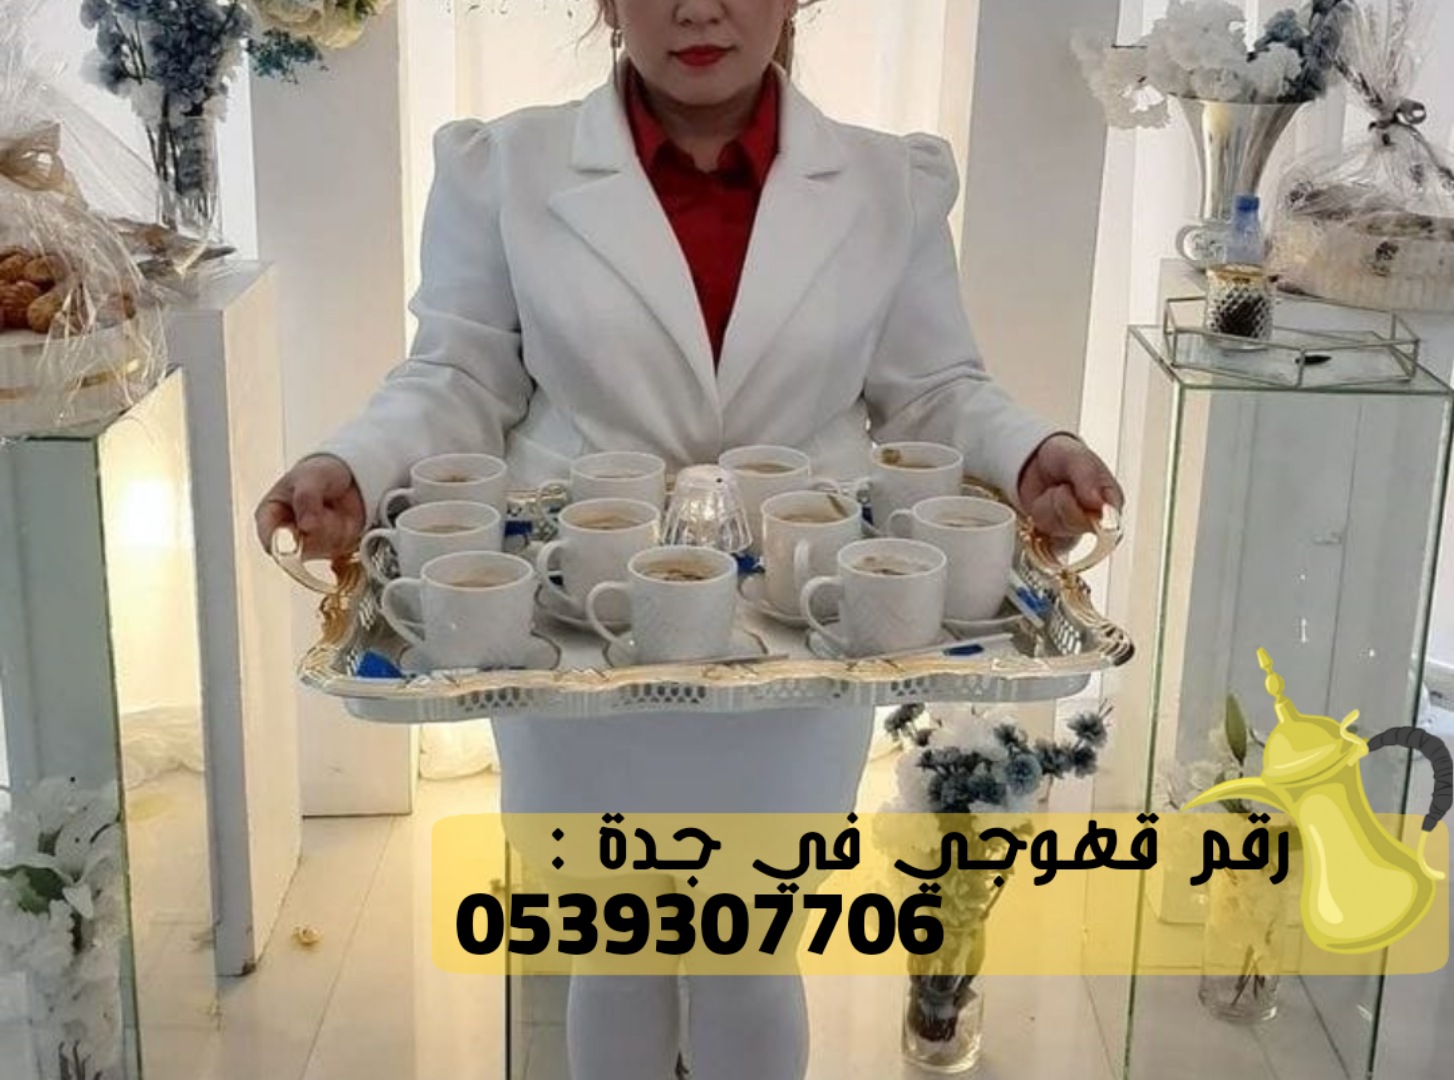 مباشرين قهوة و مباشرات قهوجيات في جدة,0539307706